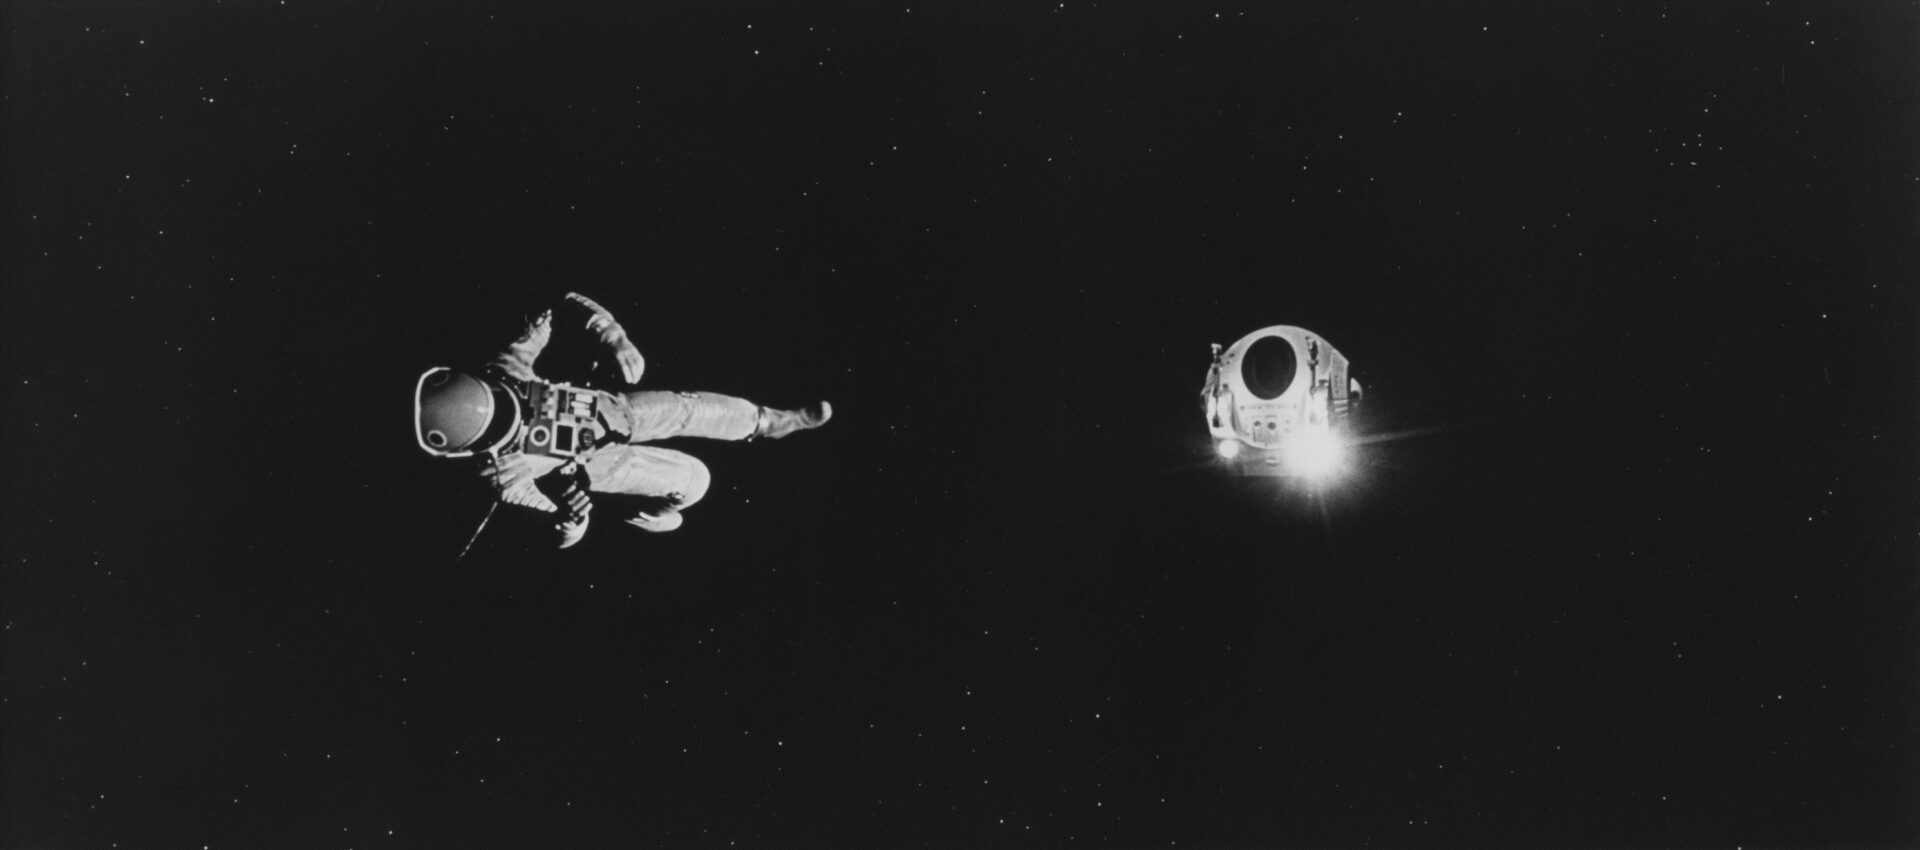 2001 a space odyssey 14 Kubrick